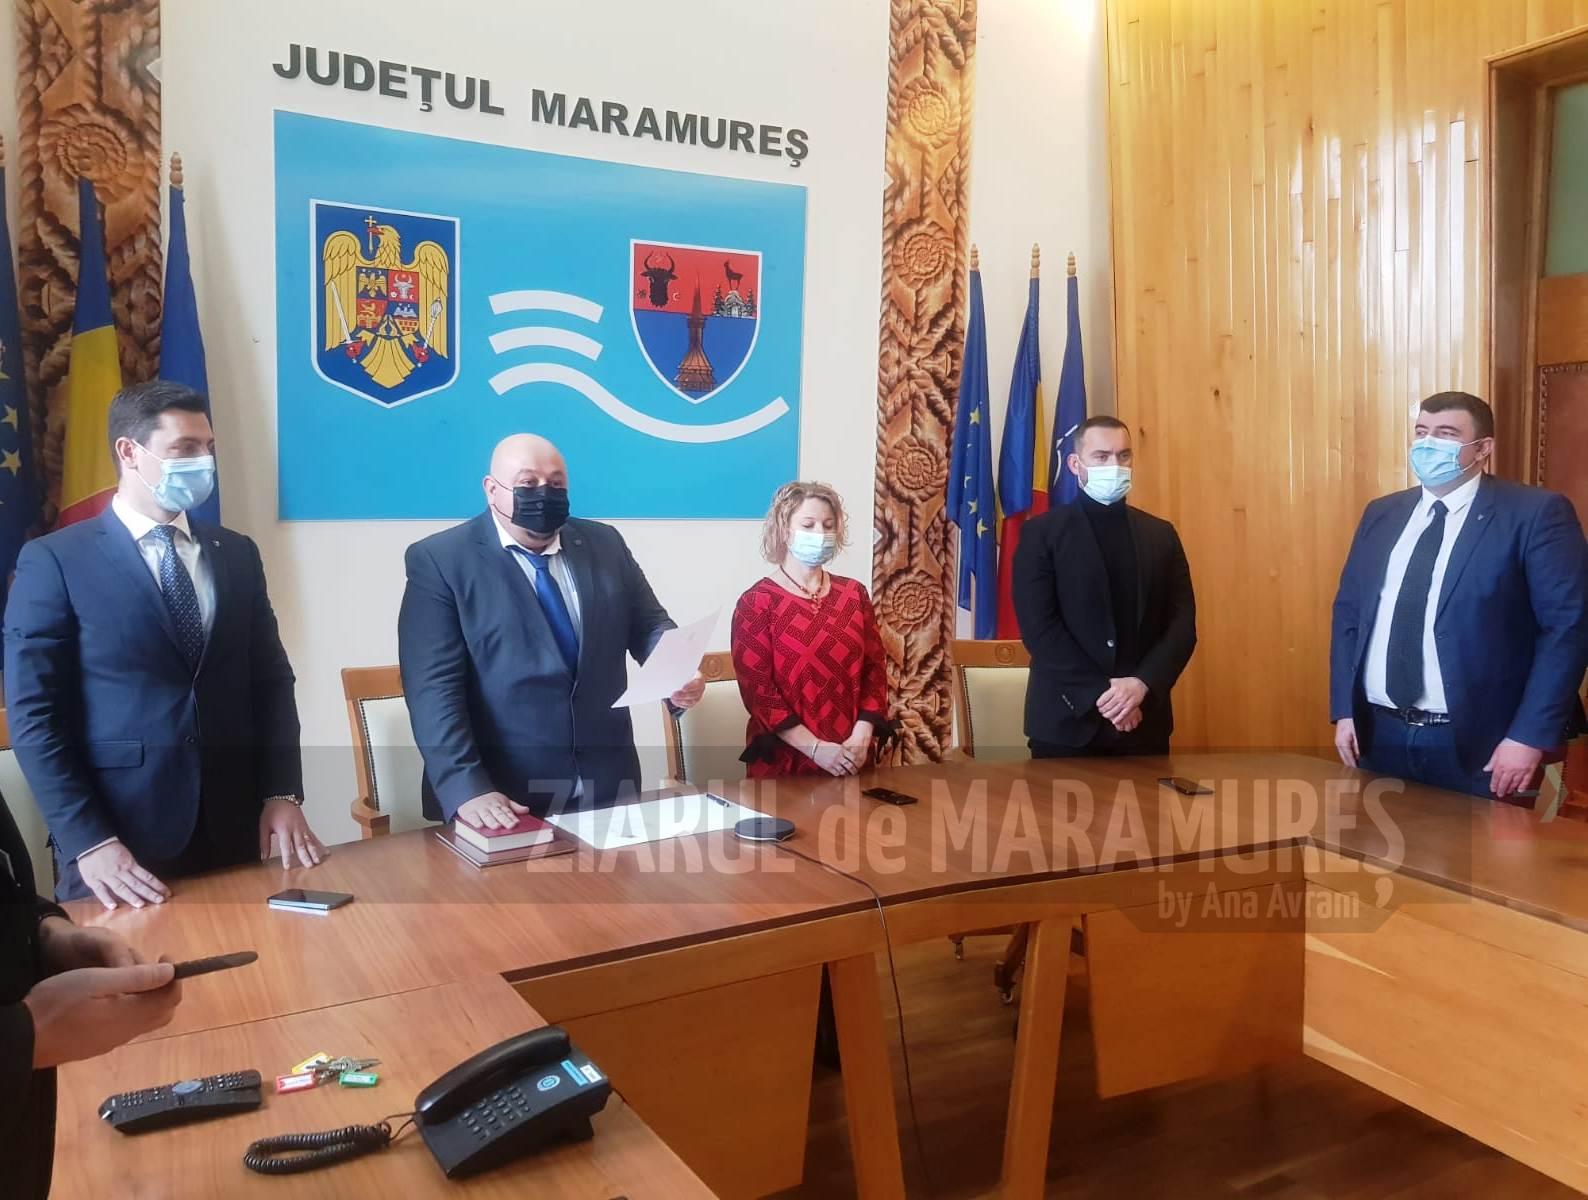 Rudolf Stauder a depus joi jurământul pentru investirea sa, în funcția de prefect al județului Maramureș